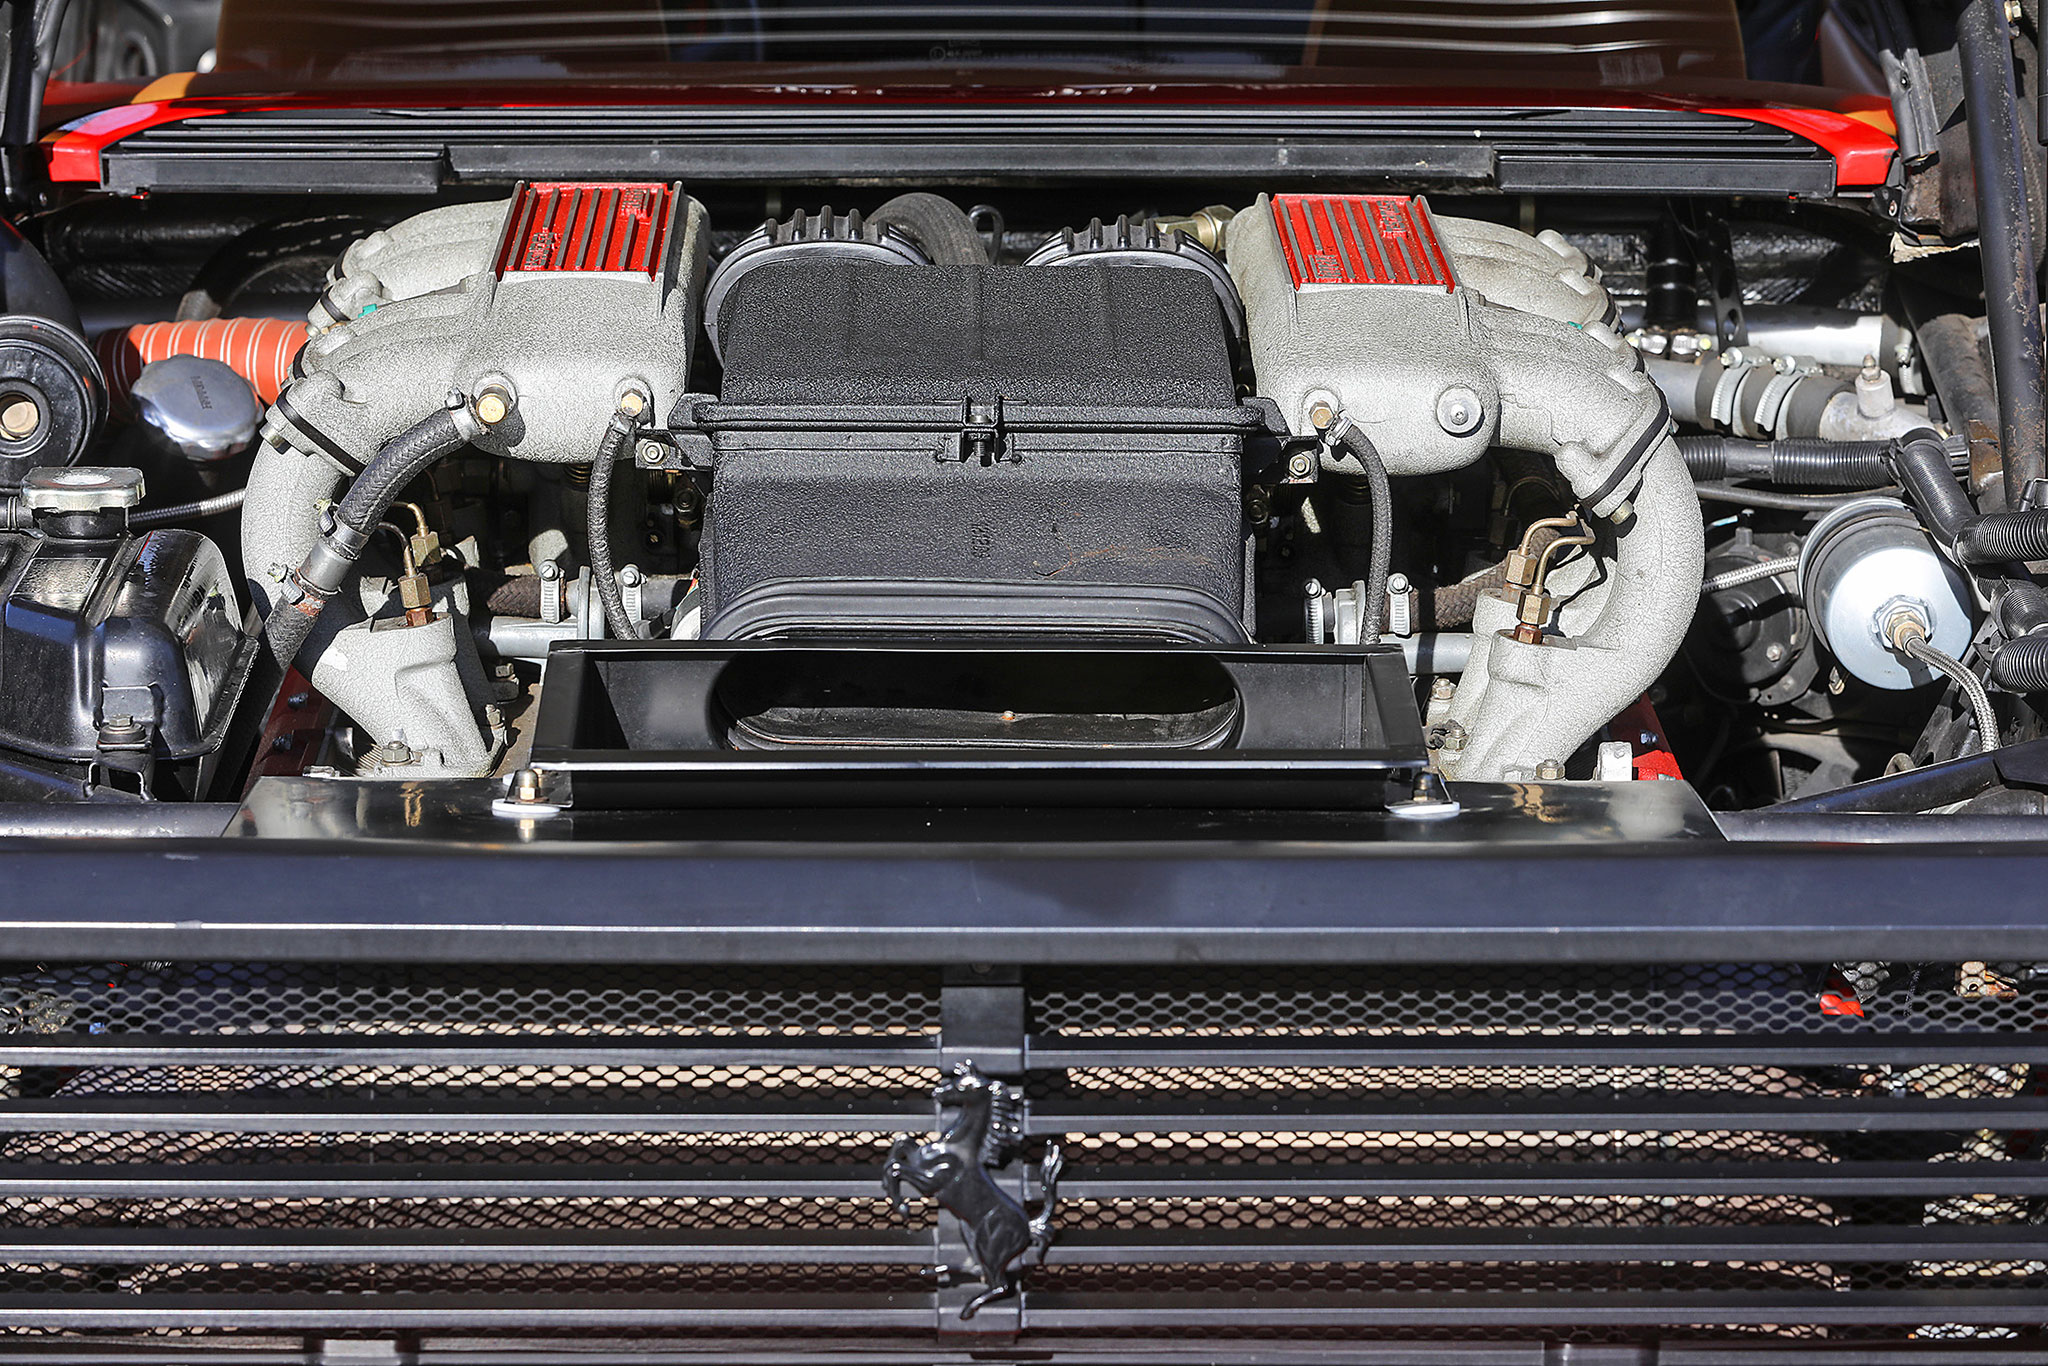 1991 Ferrari Testarossa moteur V12 de 4941 cm³ d’une puissance de 380 chevaux.